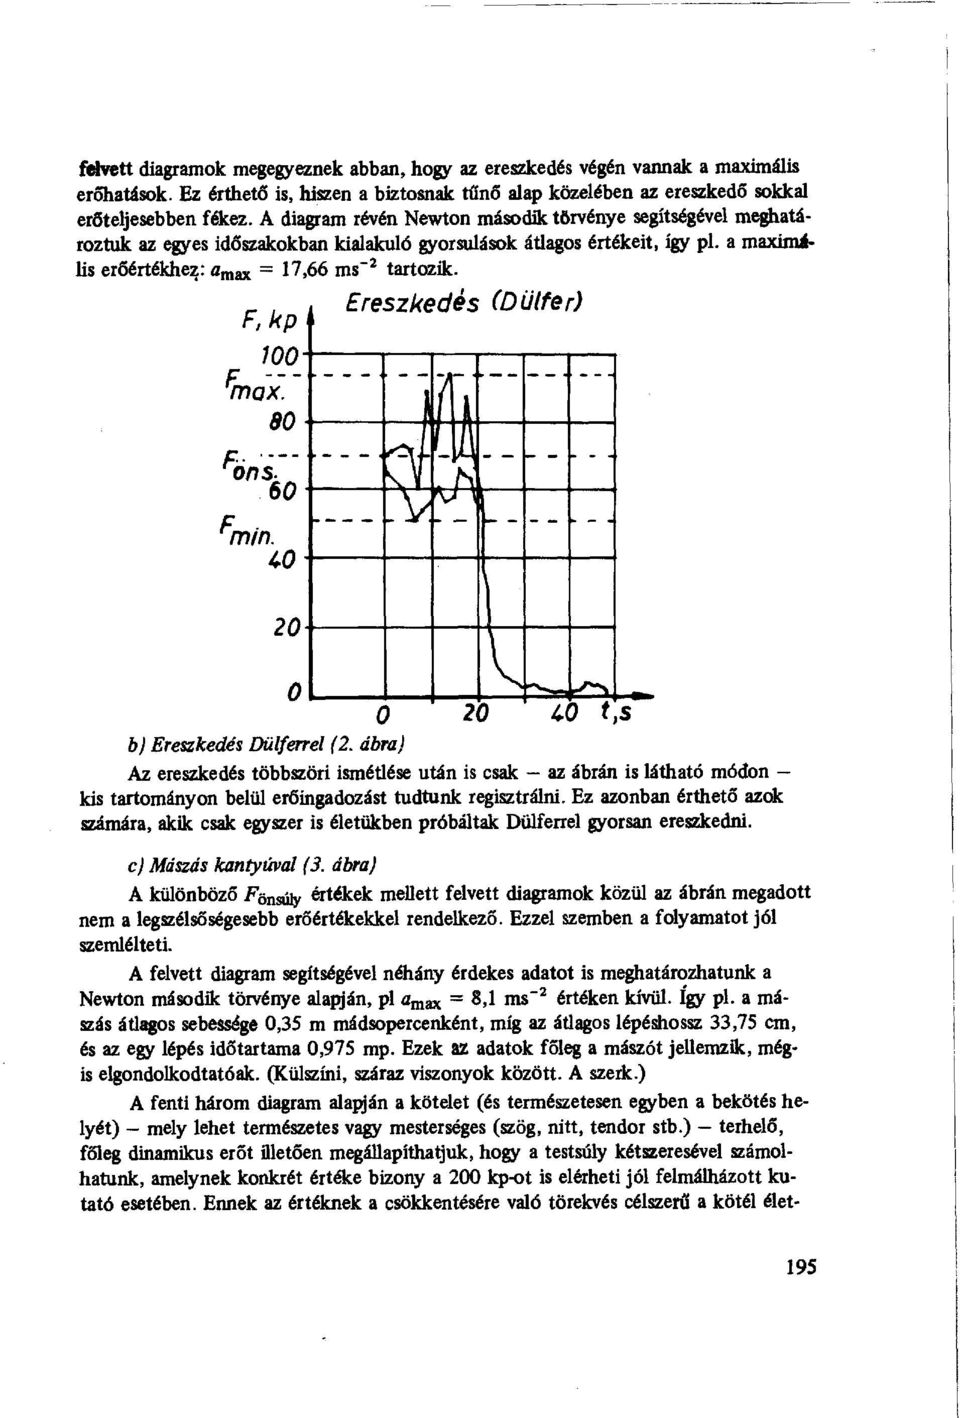 Ereszkedés (Dülfer) F, kp 1 Finox. 8 öns.- 6 ^--- Fmin. 4 2 b) Ereszkedés Dülferrel (2. ábra) 2 4.